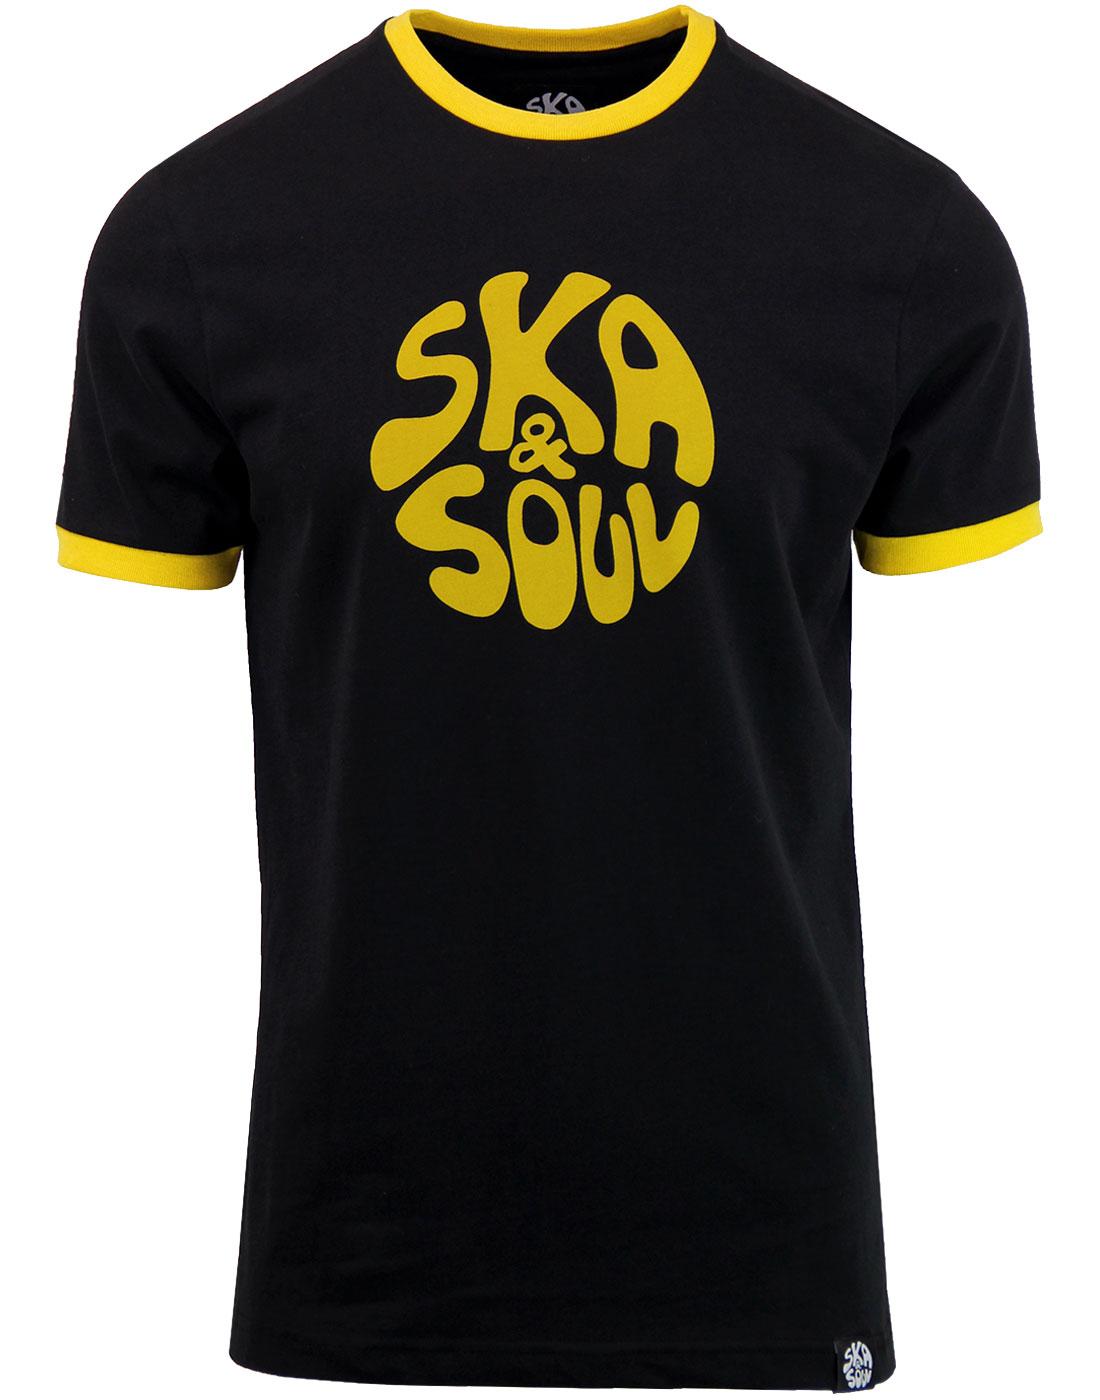 SKA & SOUL Men's Retro Mod Ringer Logo Tee